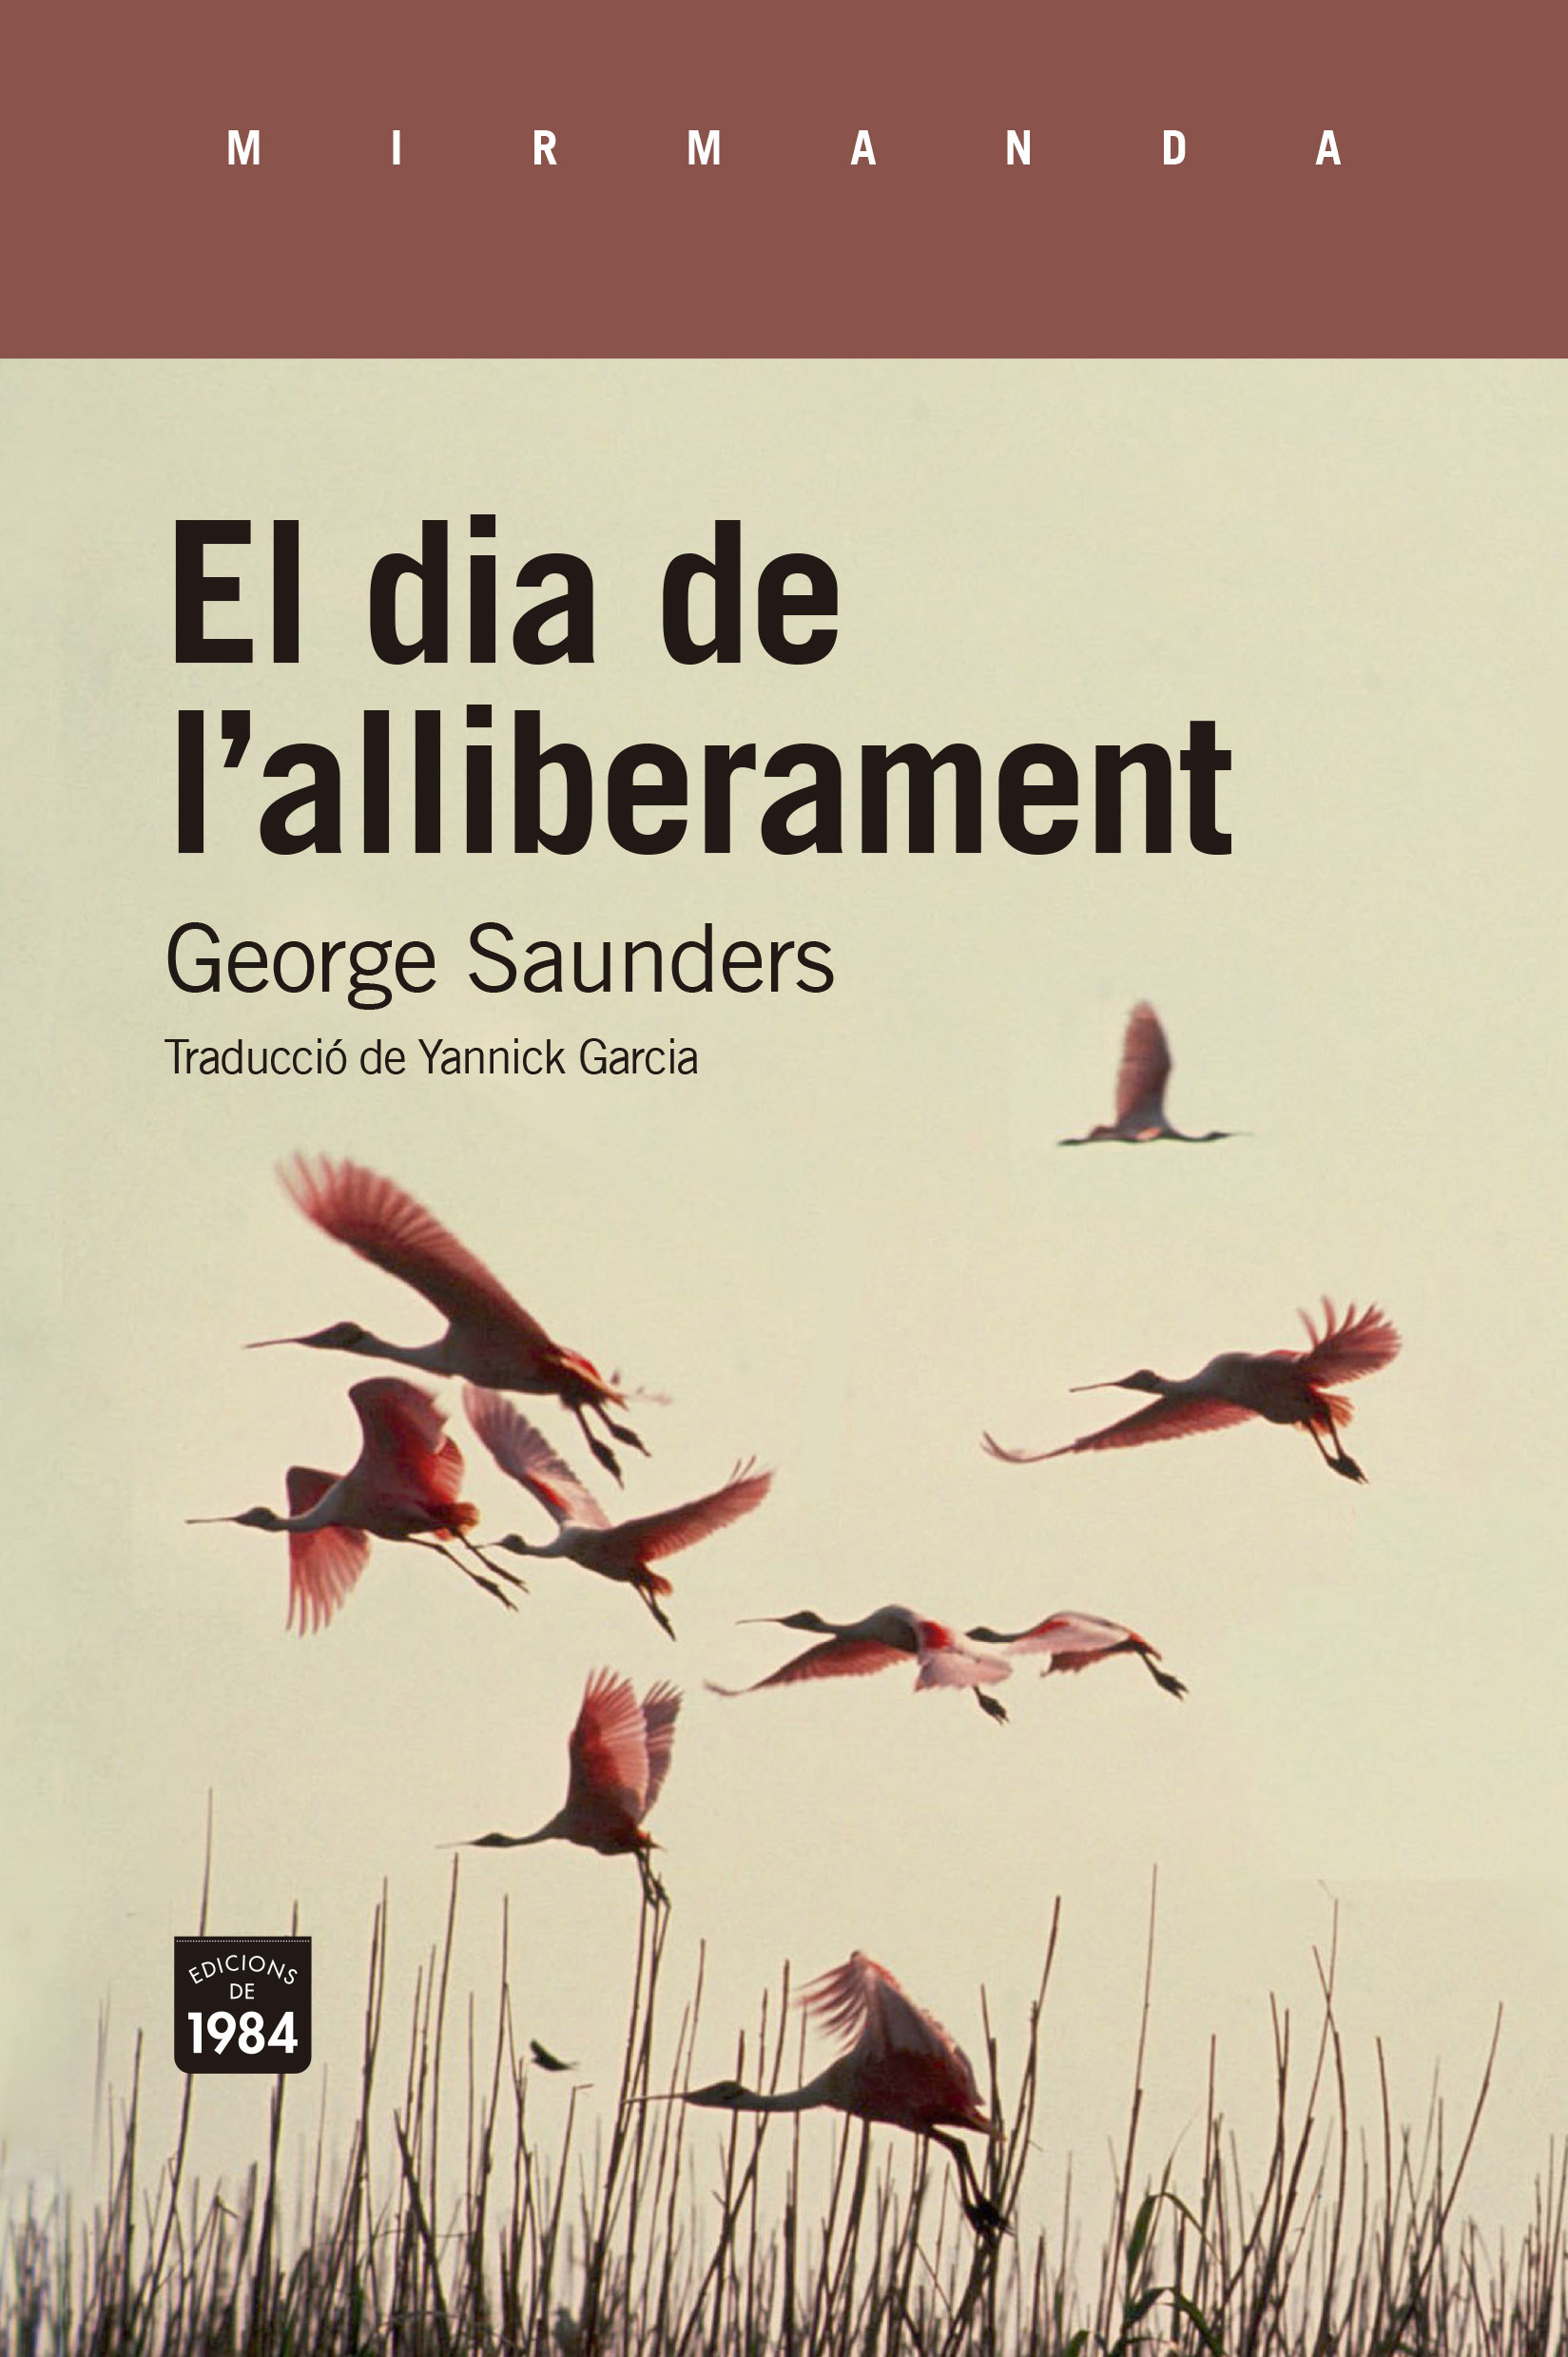 George Saunders, Yannick Garcia: El Dia de l'alliberament (català language, Edicions de 1984)